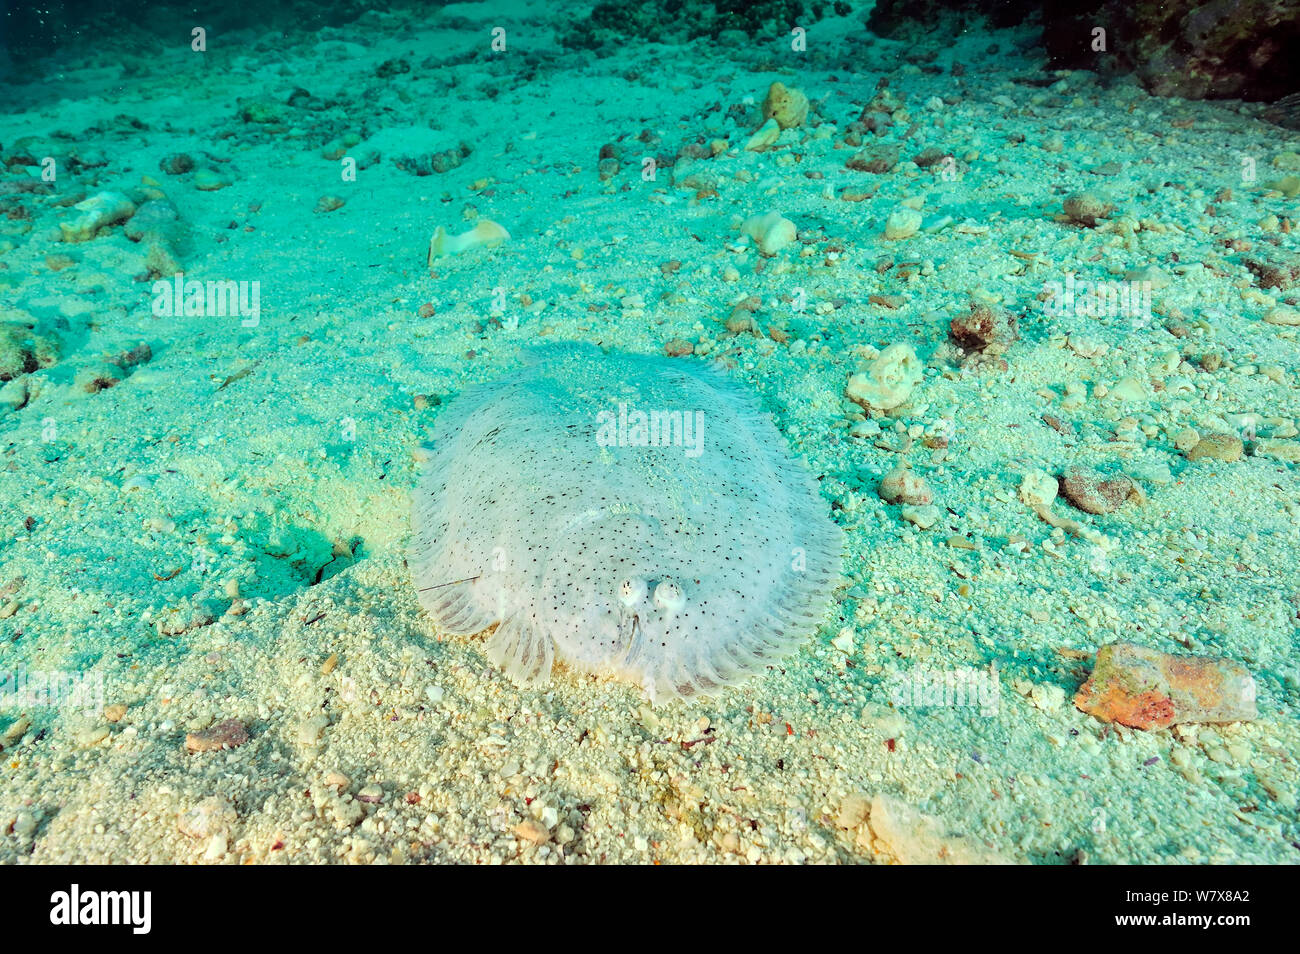 Mosè suola (Pardachirus marmoratus) con un dorso di ricci di mare bloccato nel corpo, Daymaniyat Isole, Oman. Golfo di Oman. Foto Stock